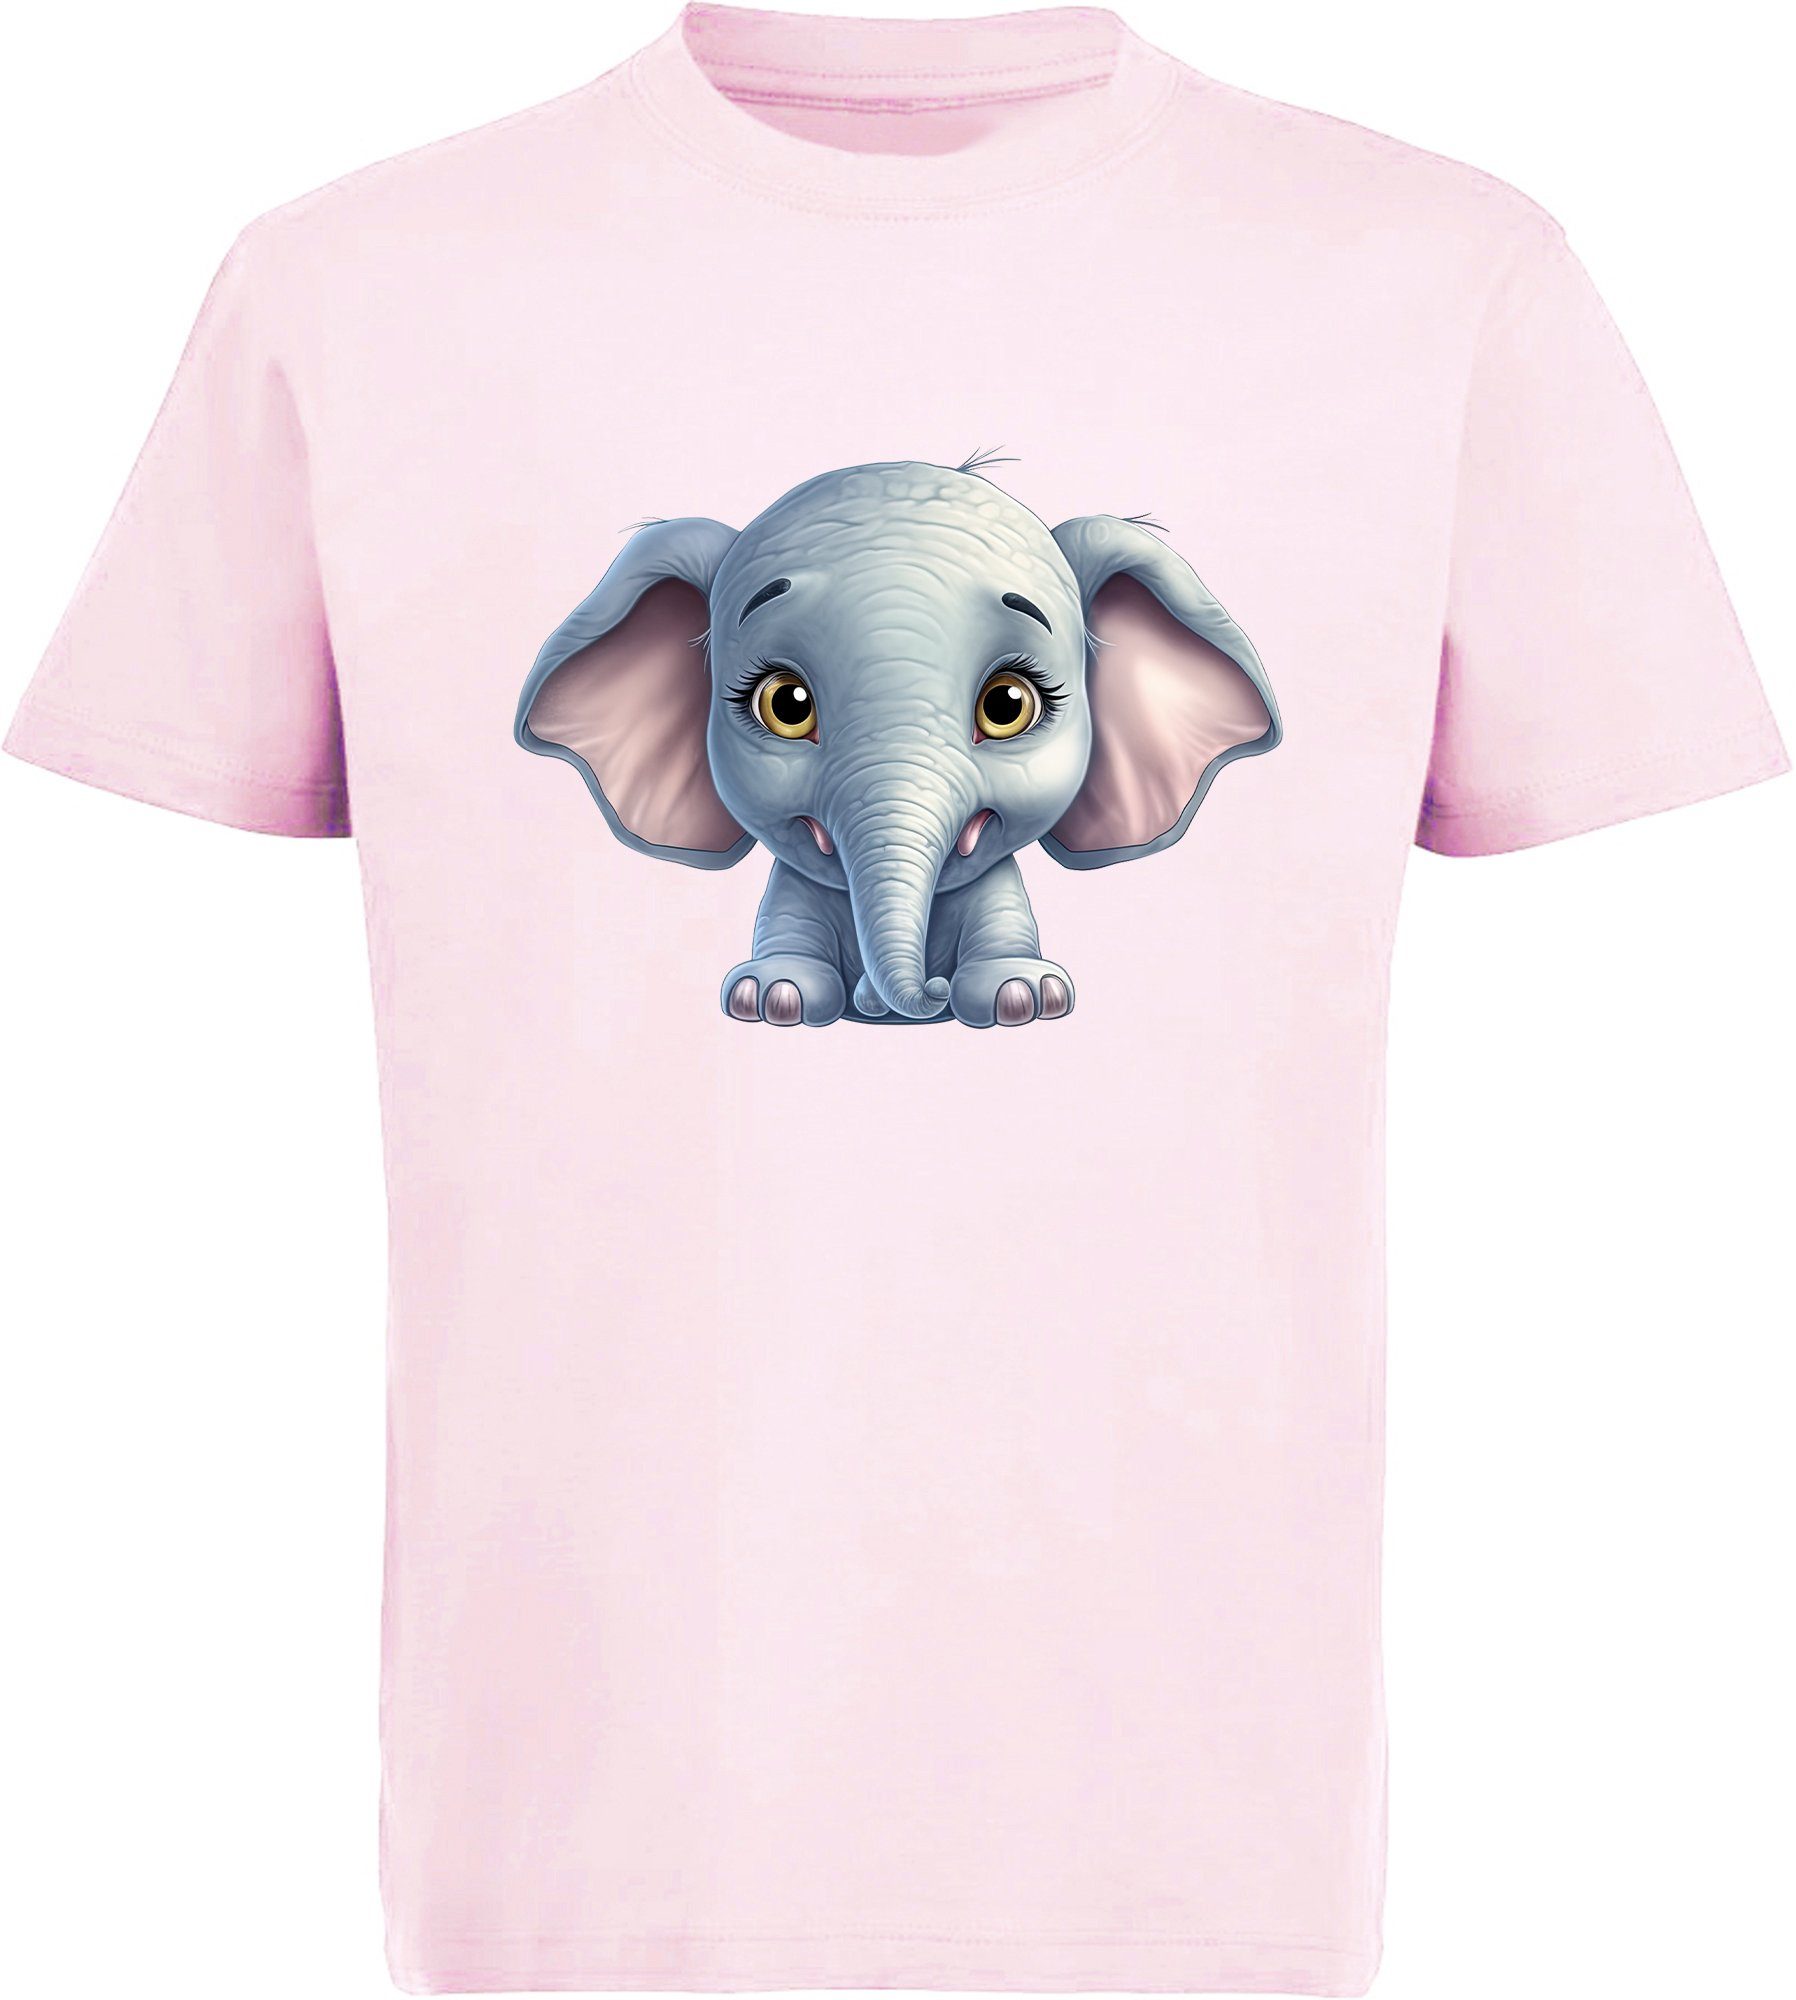 Bankdiskont MyDesign24 T-Shirt Kinder Wildtier rosa i272 - Baby Print Baumwollshirt mit Elefant Shirt bedruckt Aufdruck